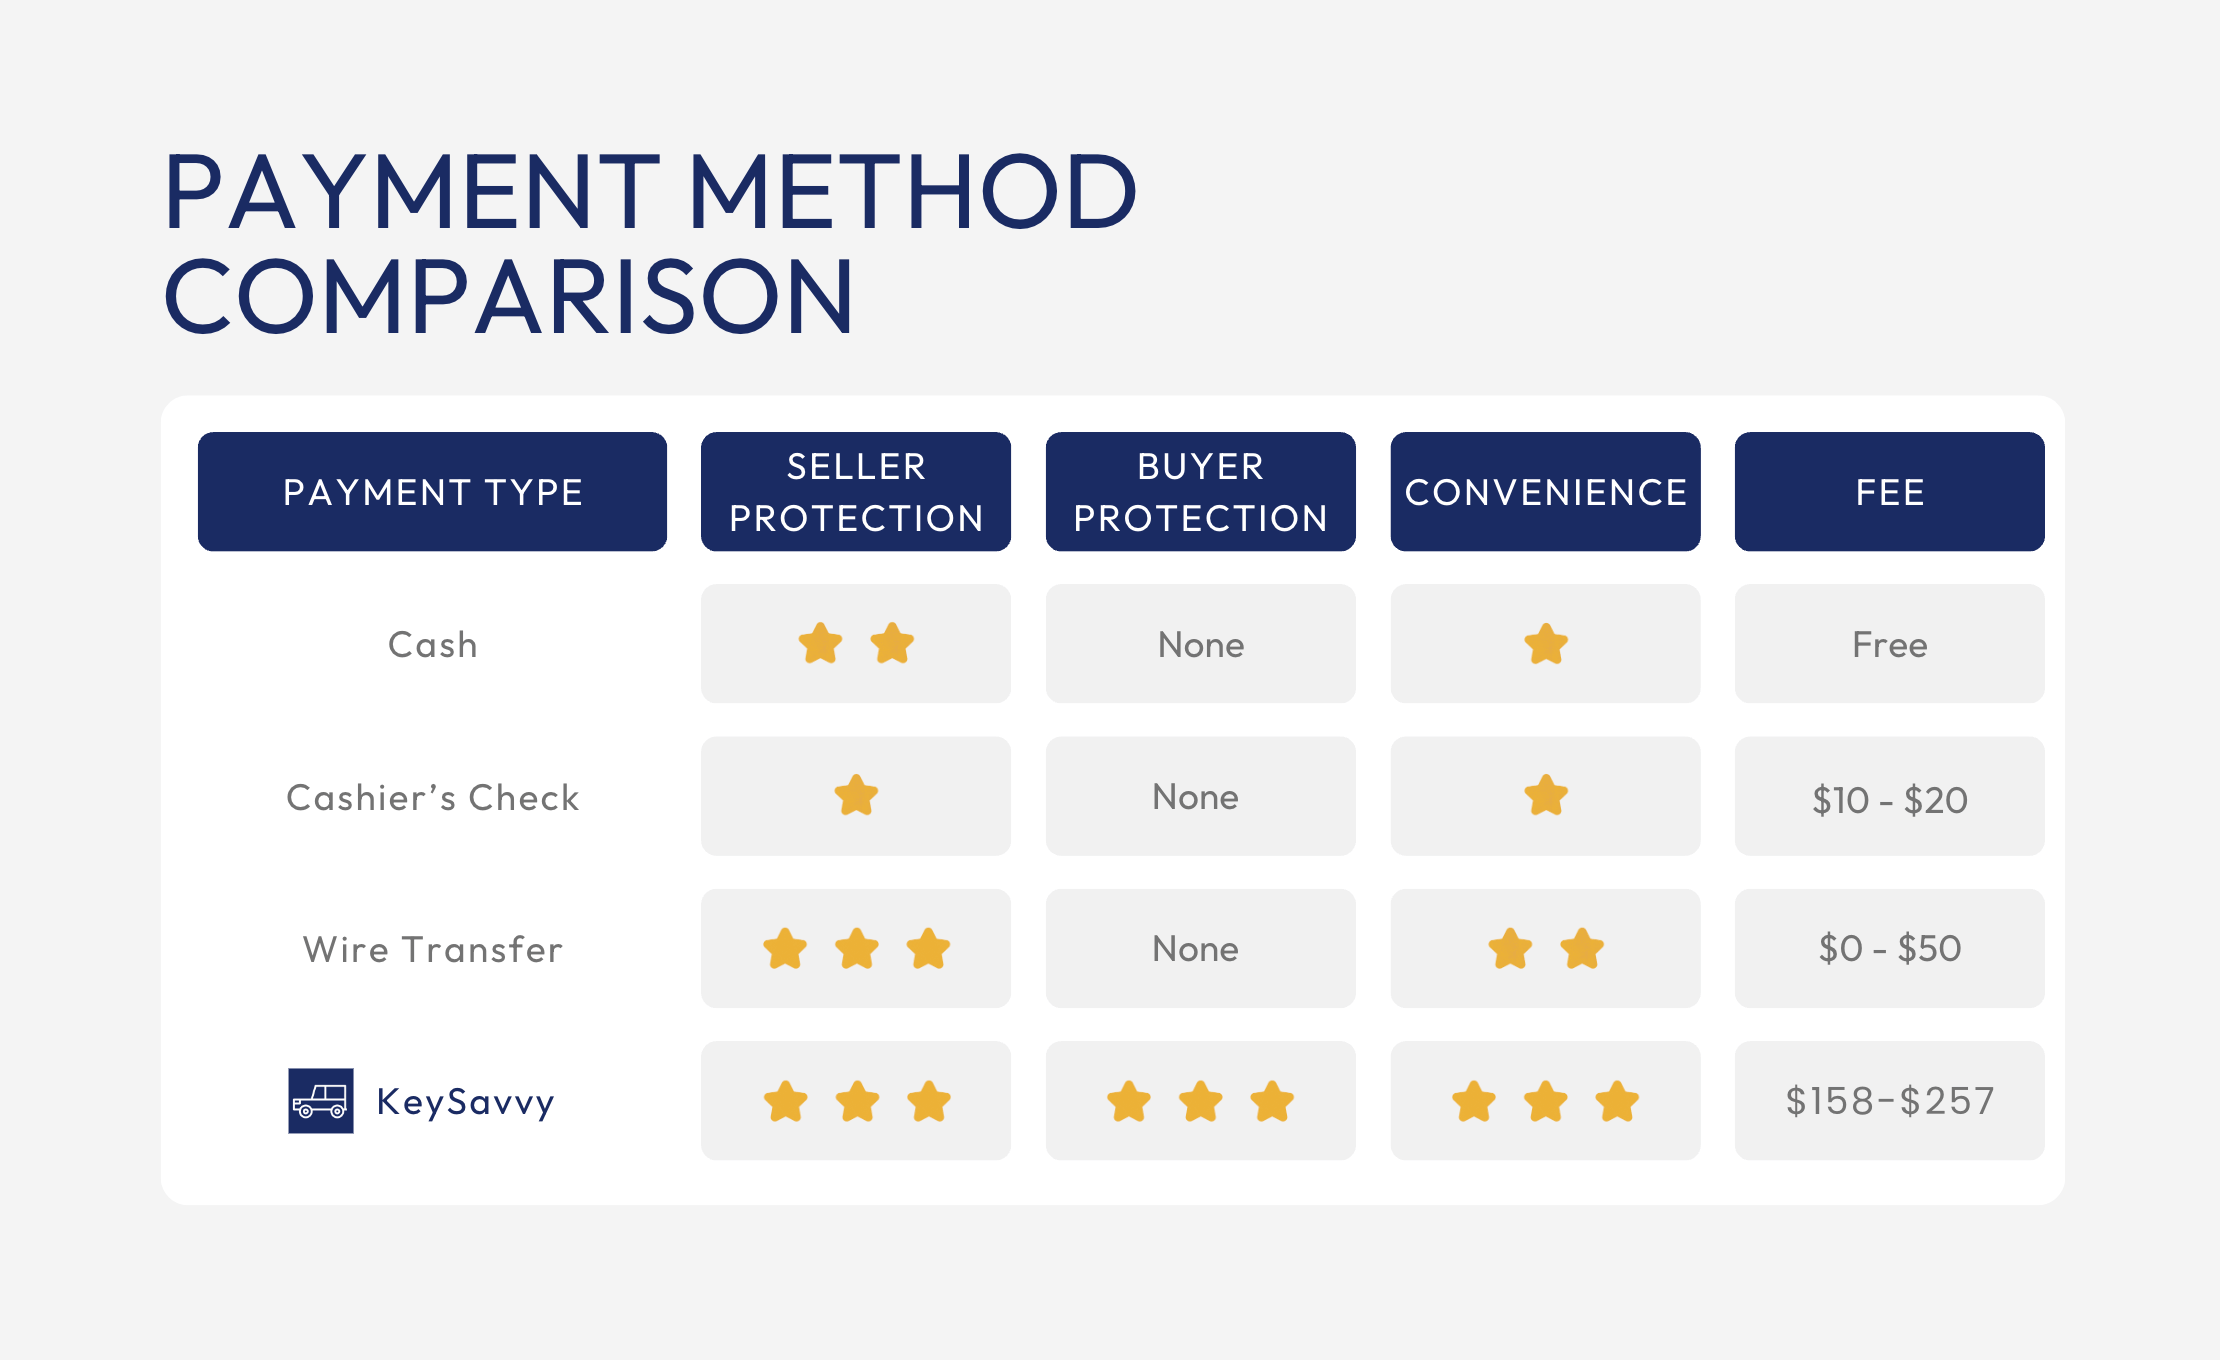 Payment method comparison chart